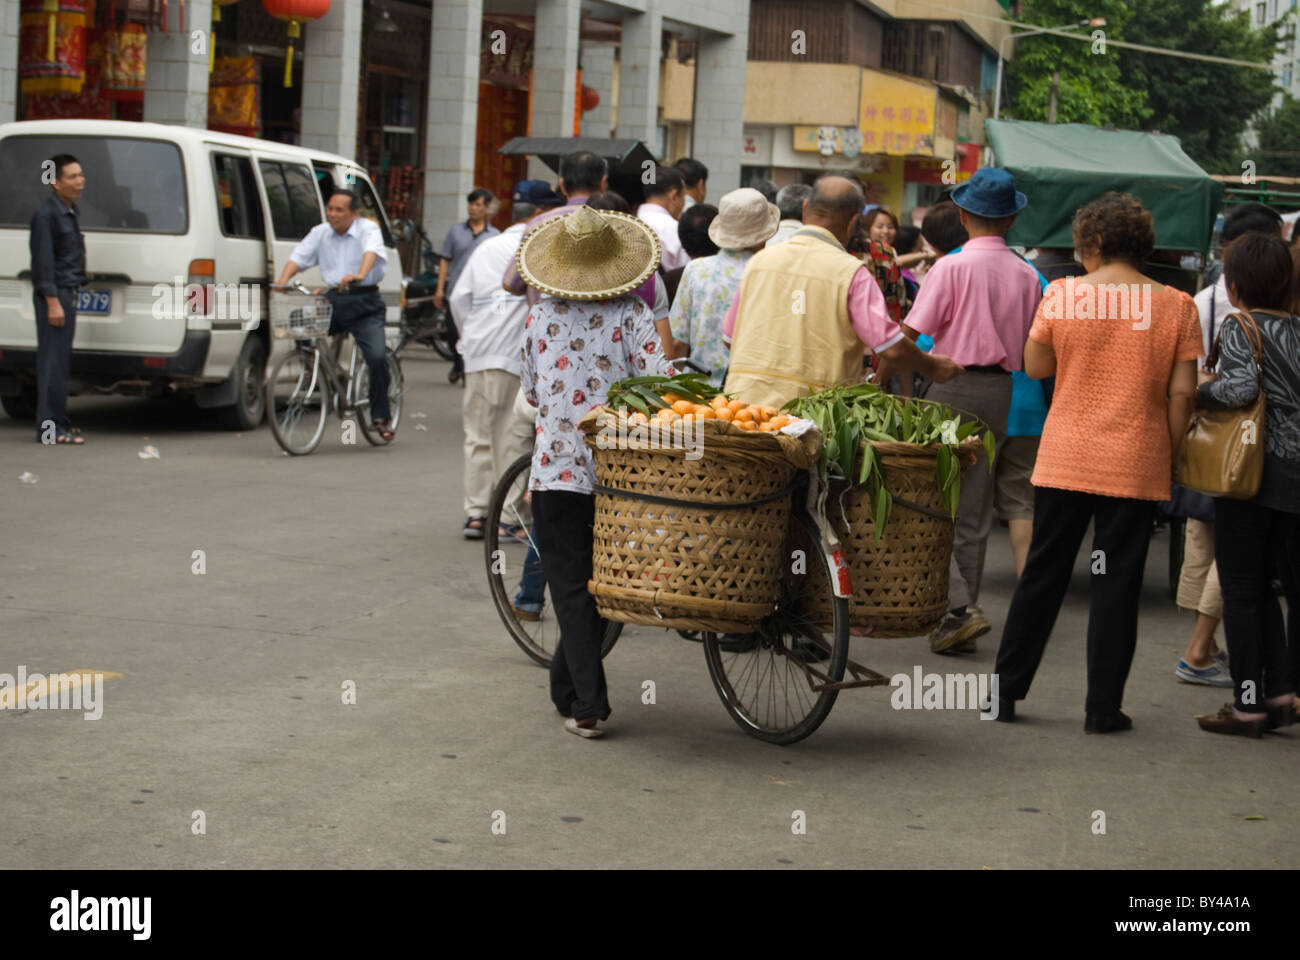 Vendeur de rue sur son vélo suit les touristes dans l'espoir de vendre ses fruits Banque D'Images